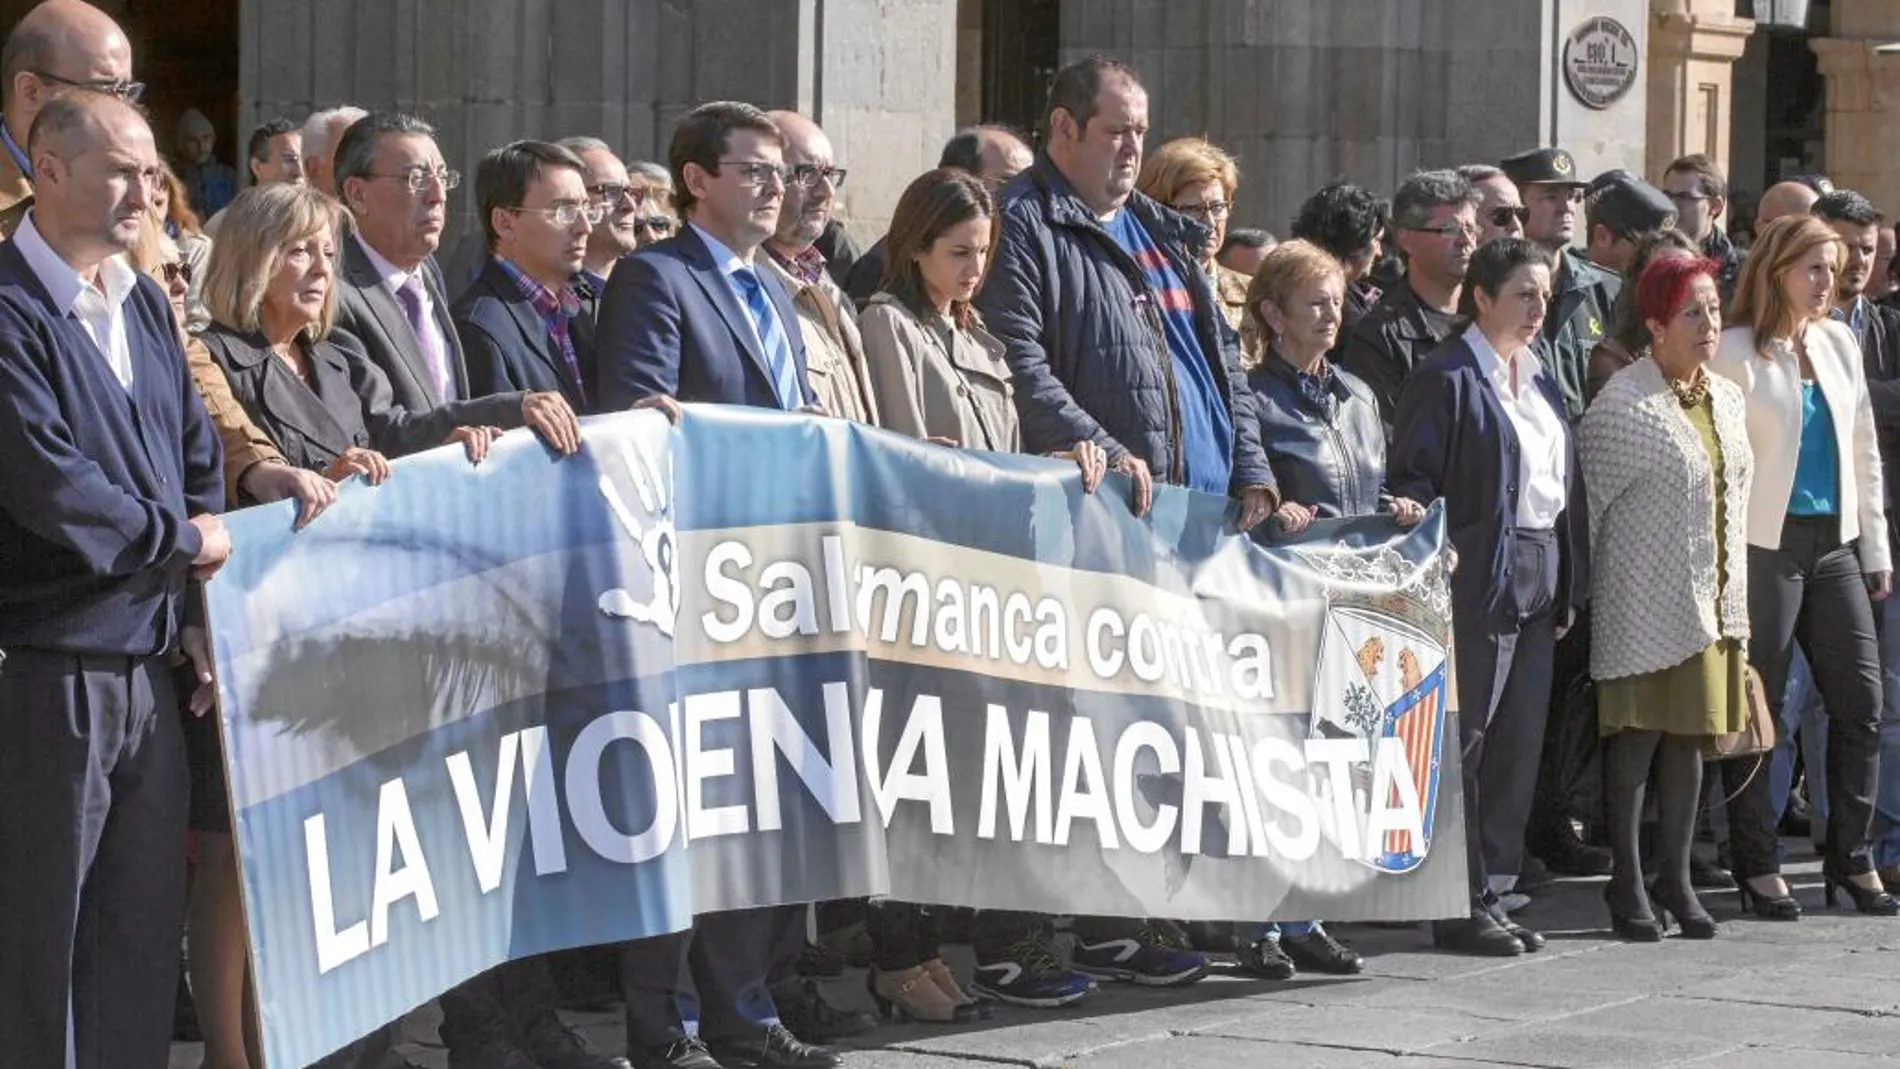 Concentración de rechazo a la violencia de género, ayer en Salamanca, encabezada por su alcalde, Alfonso Fernández Mañueco